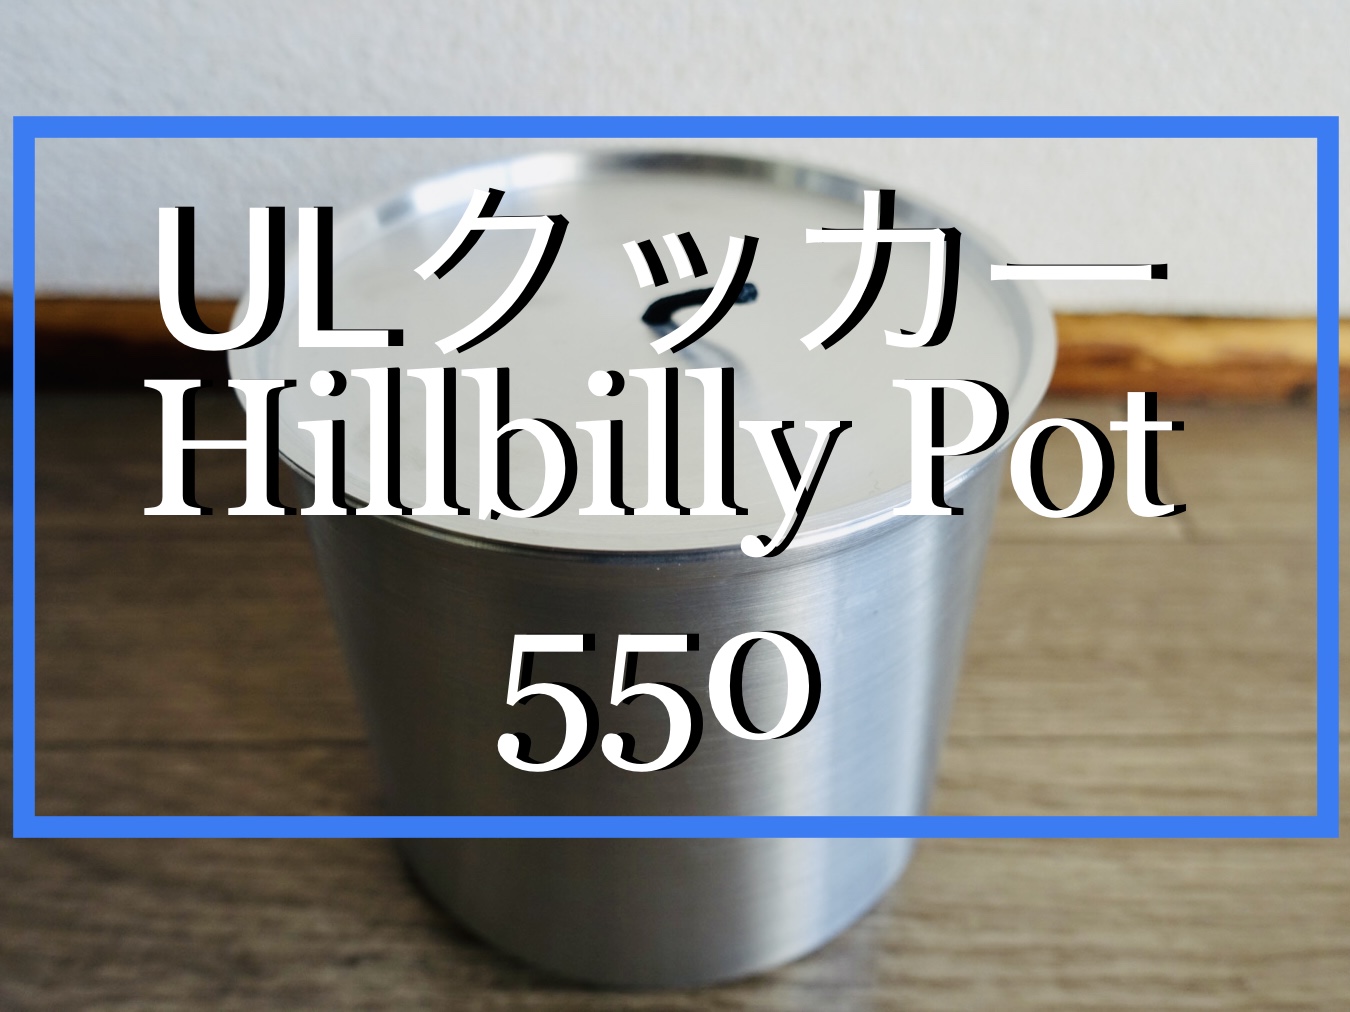 まとめ買い割引 Hillbilly Pot 550 ヒルビリーポット 調理器具